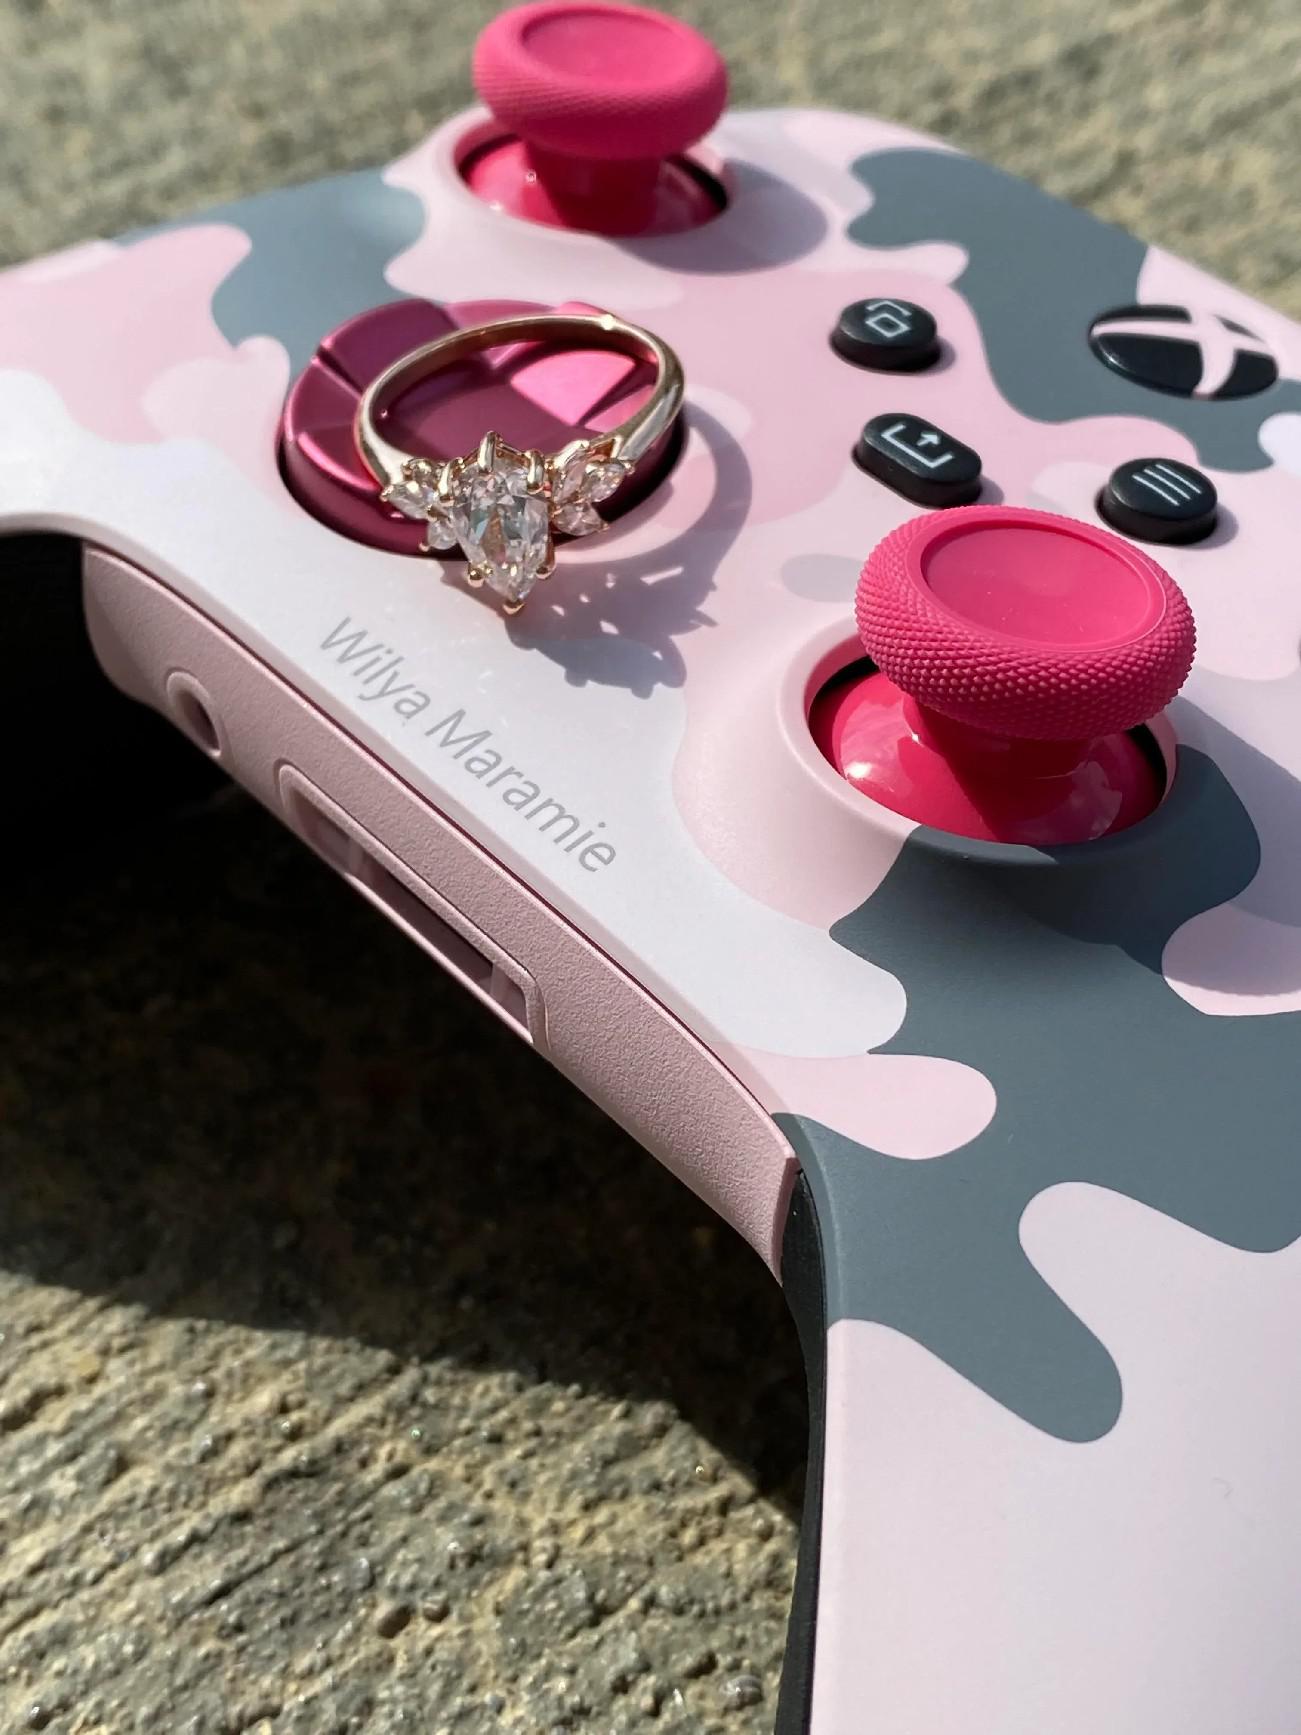 Jogador do Xbox usa controle personalizado para pedir namorada em casamento